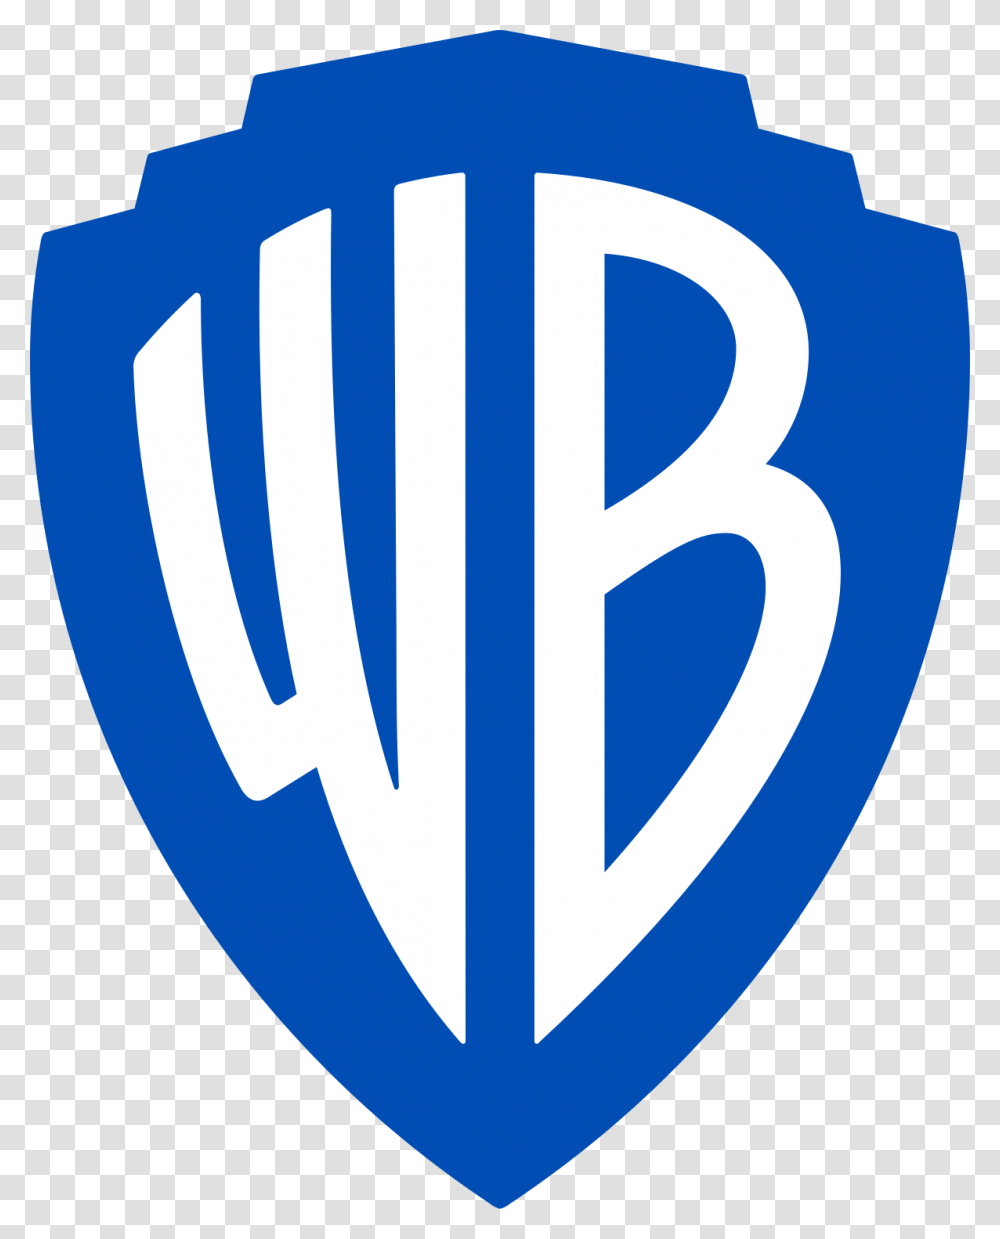 Warner Bros Pictures 2019, Logo, Sweets, Food Transparent Png